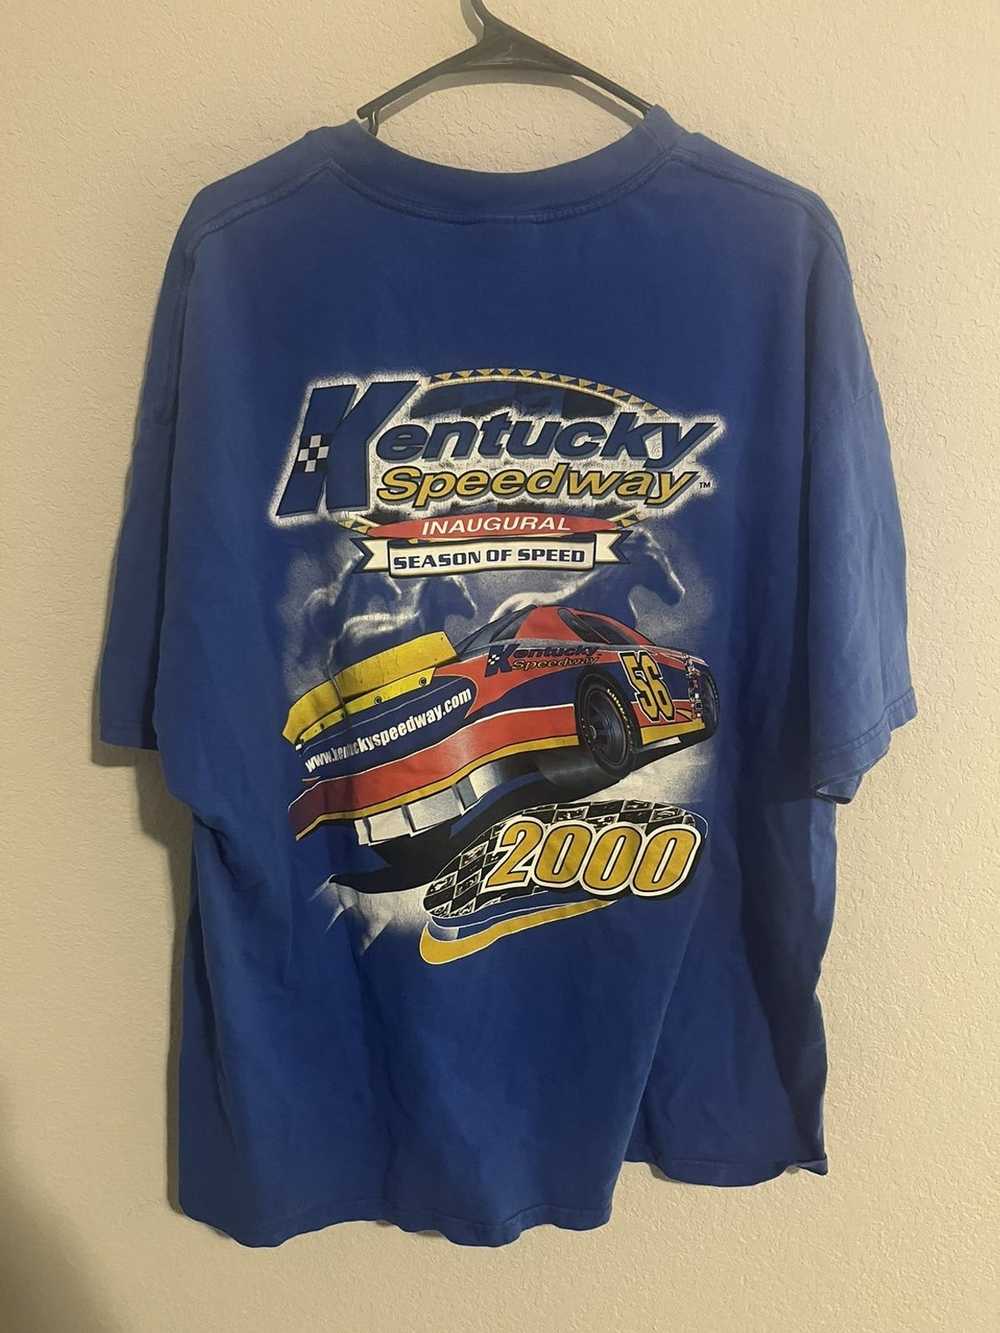 Hanes Kentucky speedway T-shirt - image 3